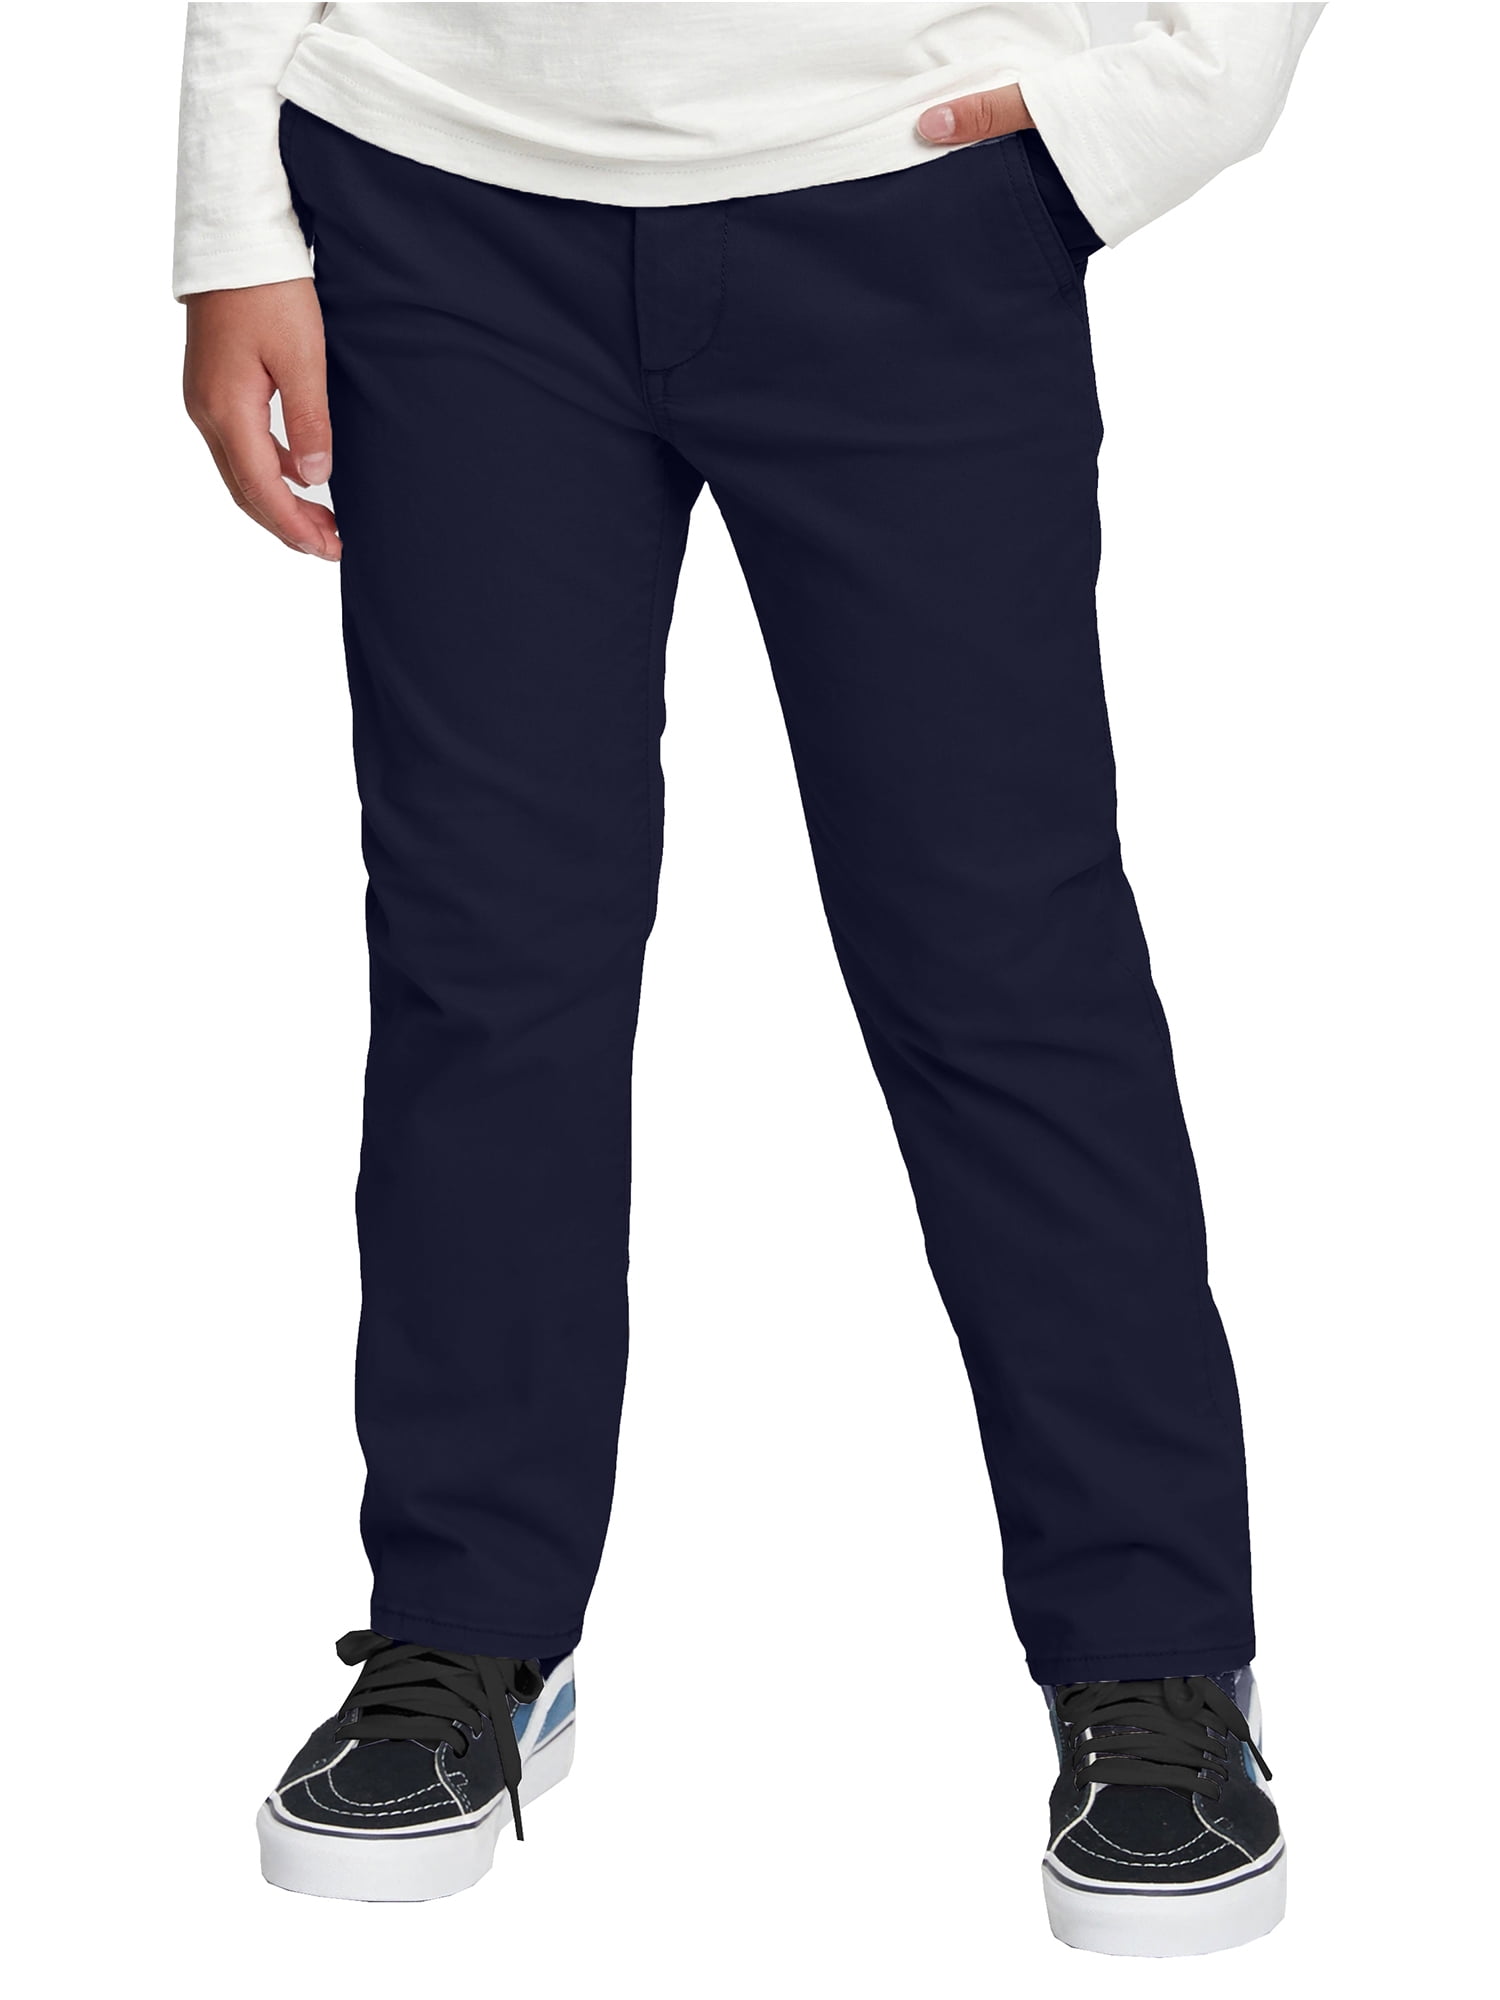 Conqueror Mens Size 48R Navy Blue BDU Cargo Uniform Pants 29 in Inseam   eBay